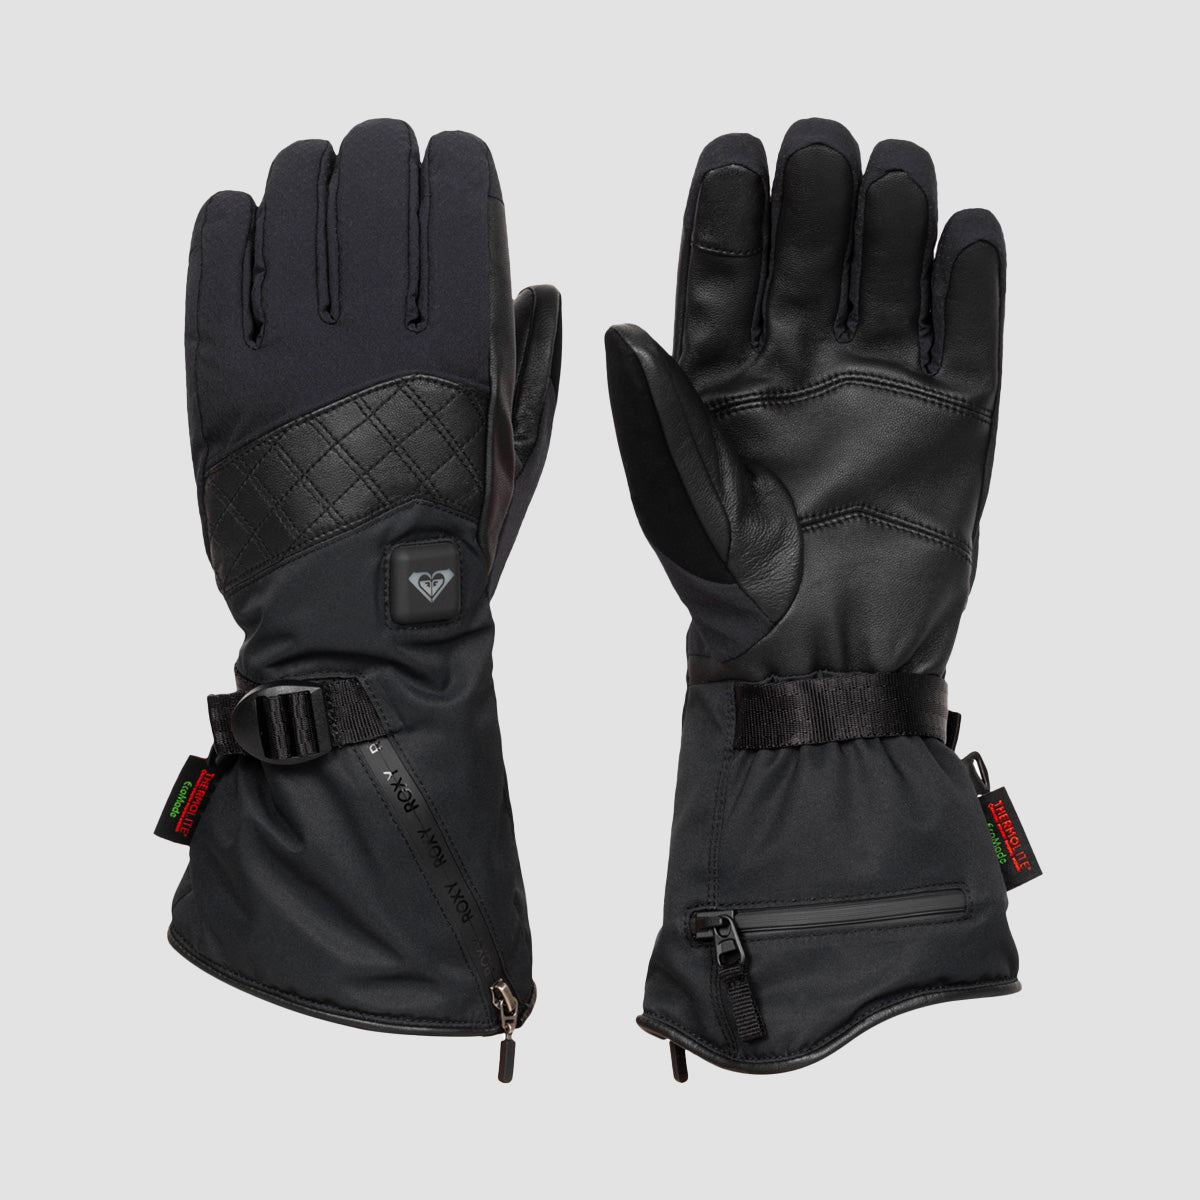 Roxy Sierra Warmlink Snow Gloves True Black - Womens